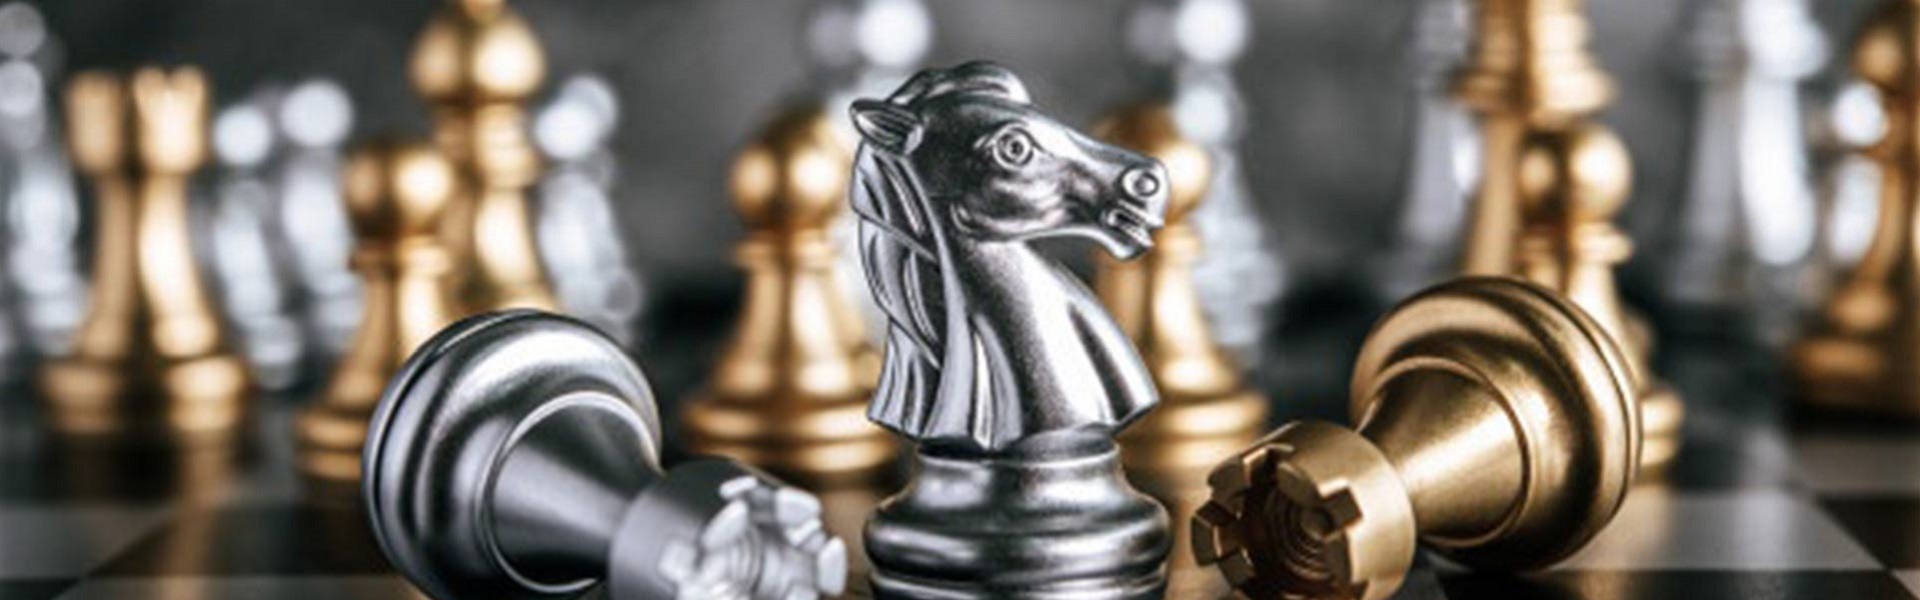 Sobna ulazna vrata online shop |  Chess lessons Dubai & New York